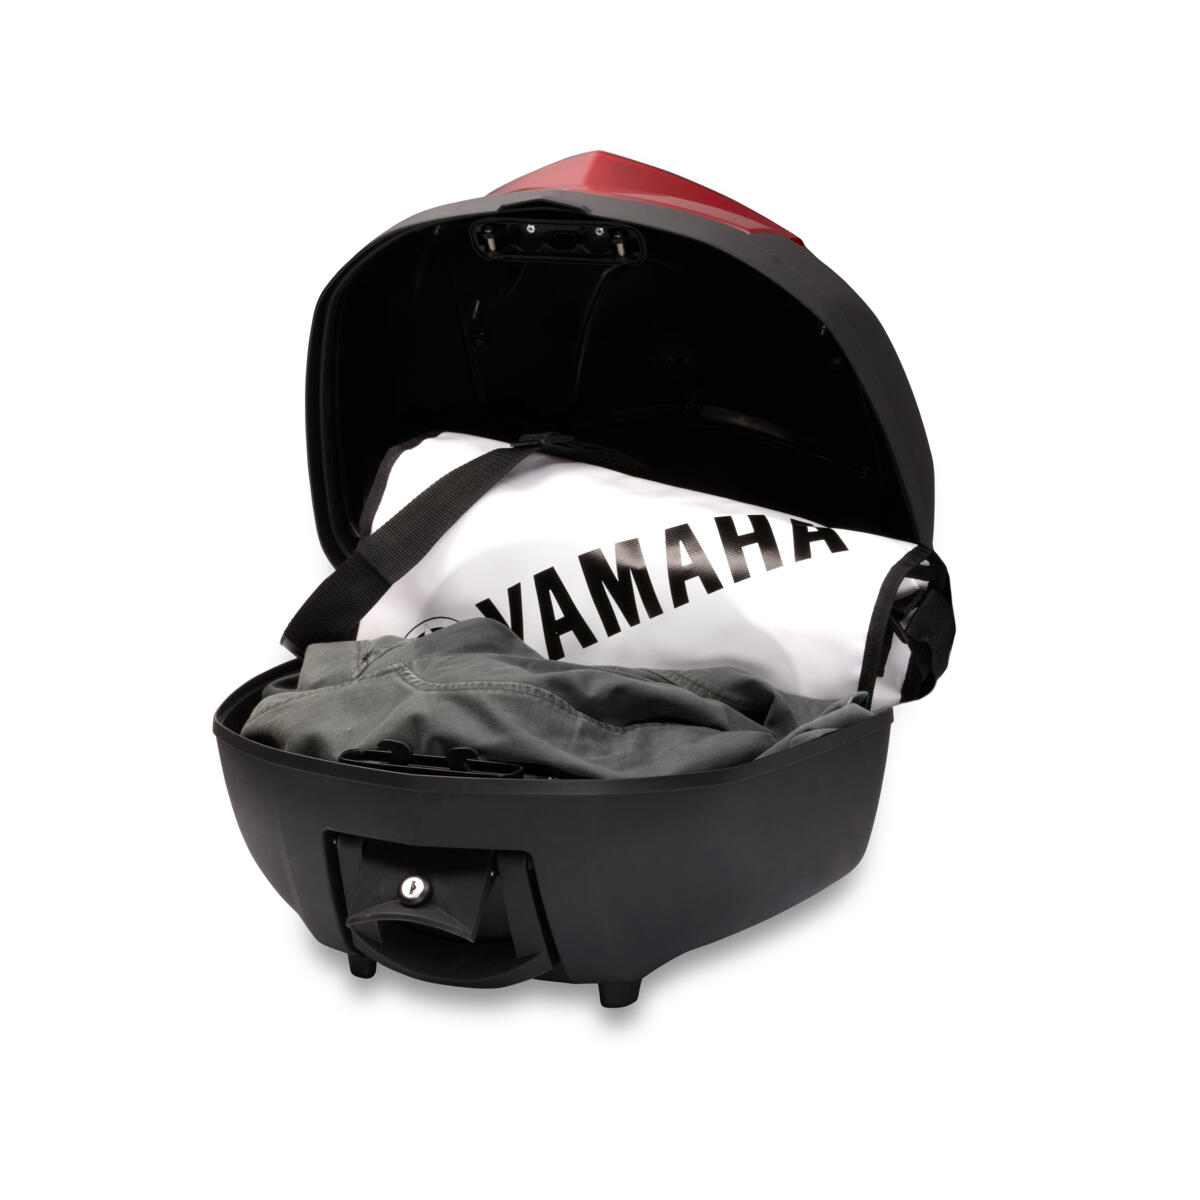 Kakovosten kovček za dodaten prtljažni prostor/večji prostor za shranjevanje za motorje Yamaha.